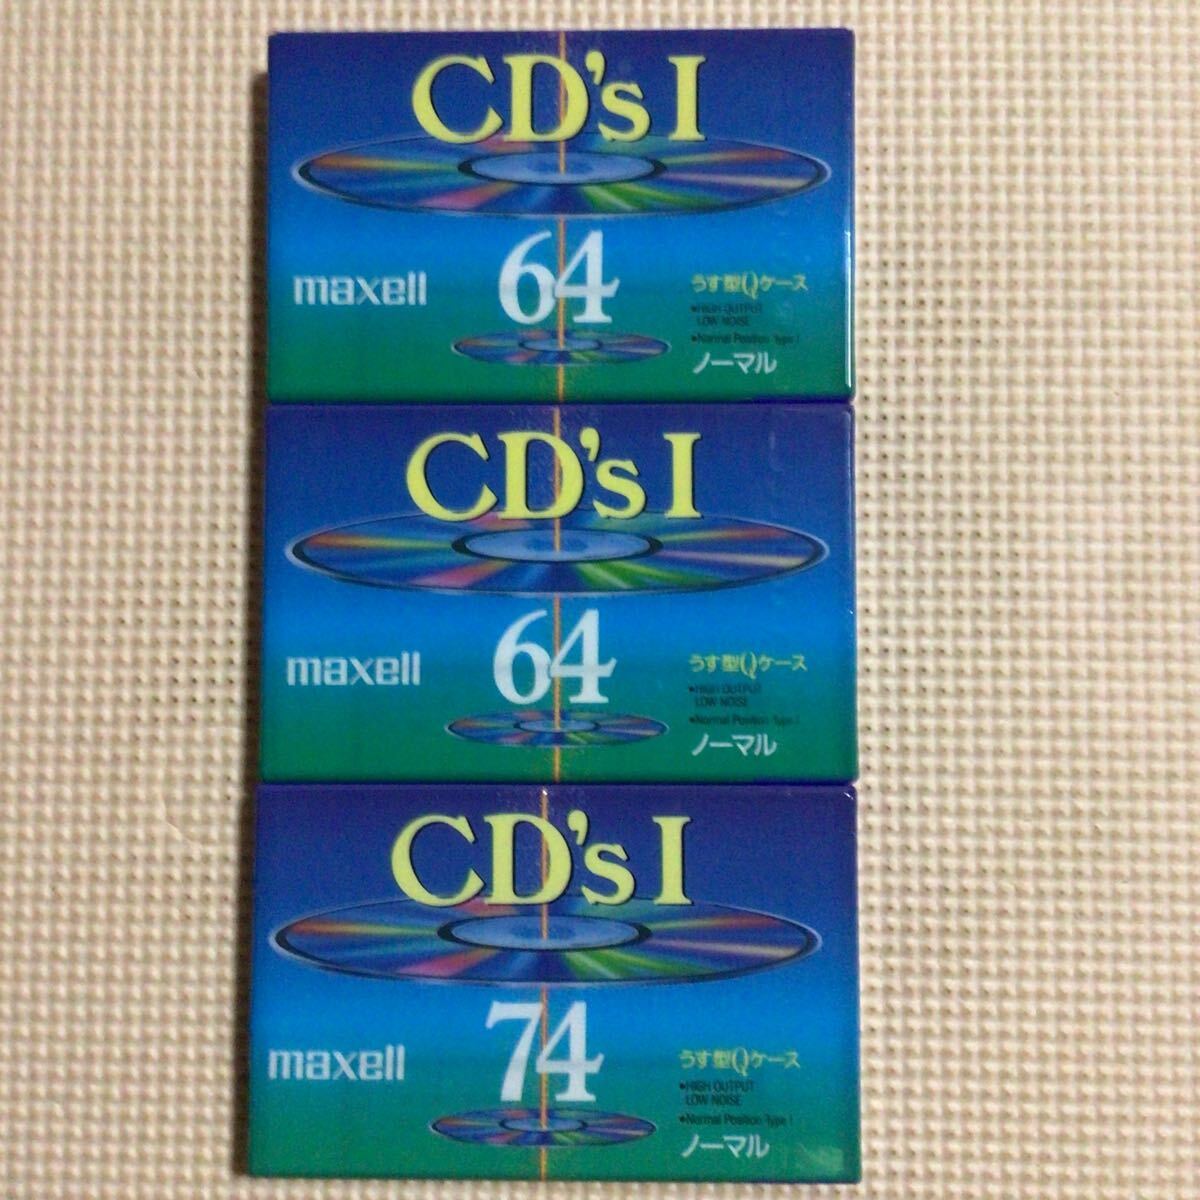 maxell CD'sⅠ 64x2.74. ノーマルポジション カセットテープ3本セット【未開封新品】■■_画像1